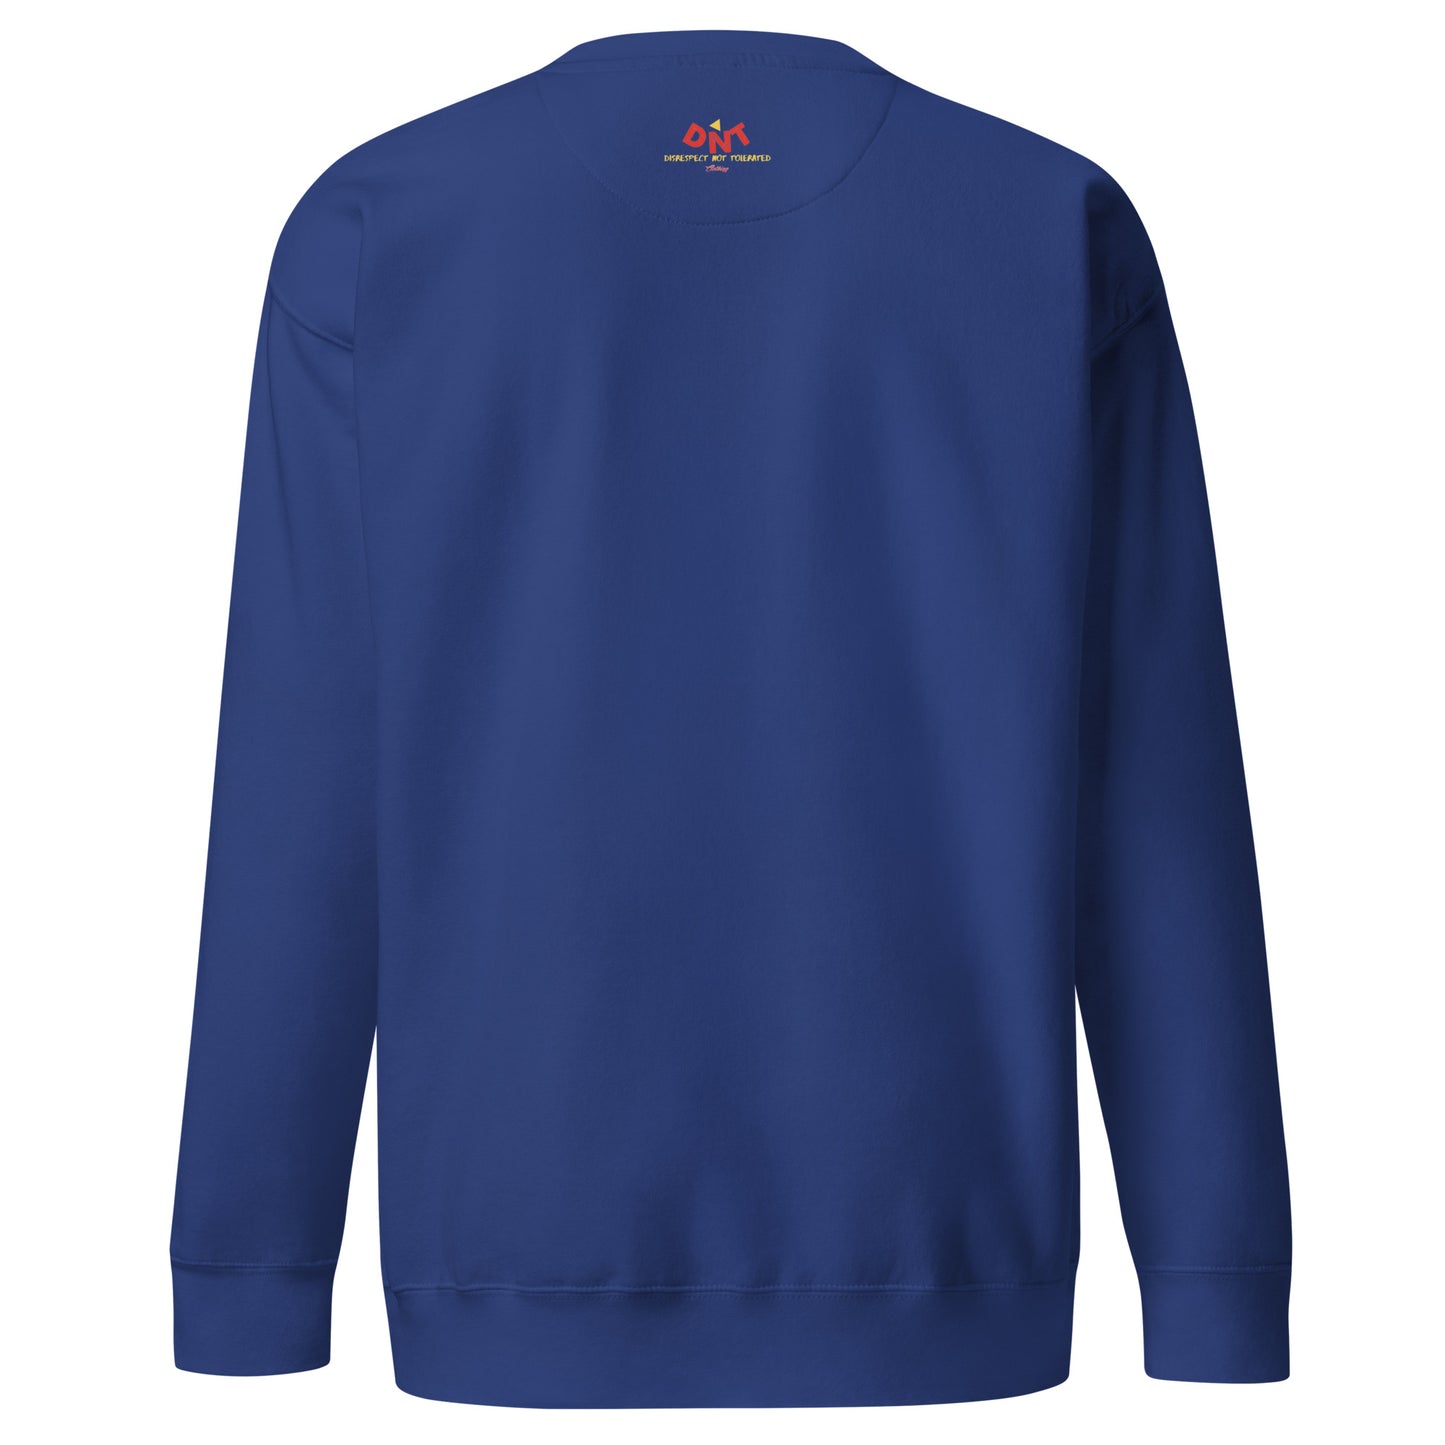 Creations United -Unisex Premium Sweatshirt